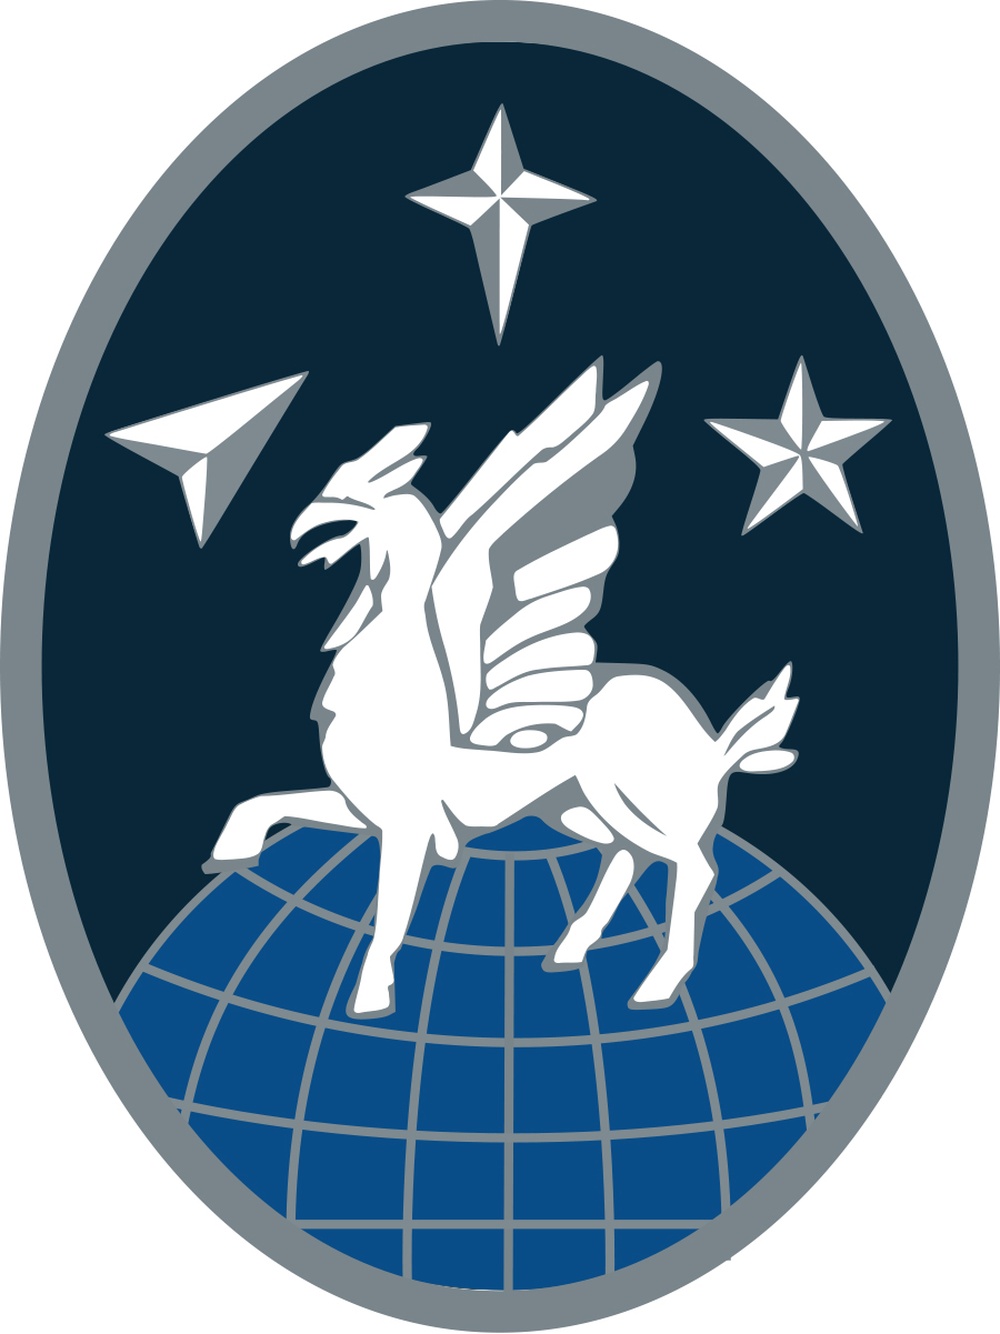 50 OSS - Official Emblem